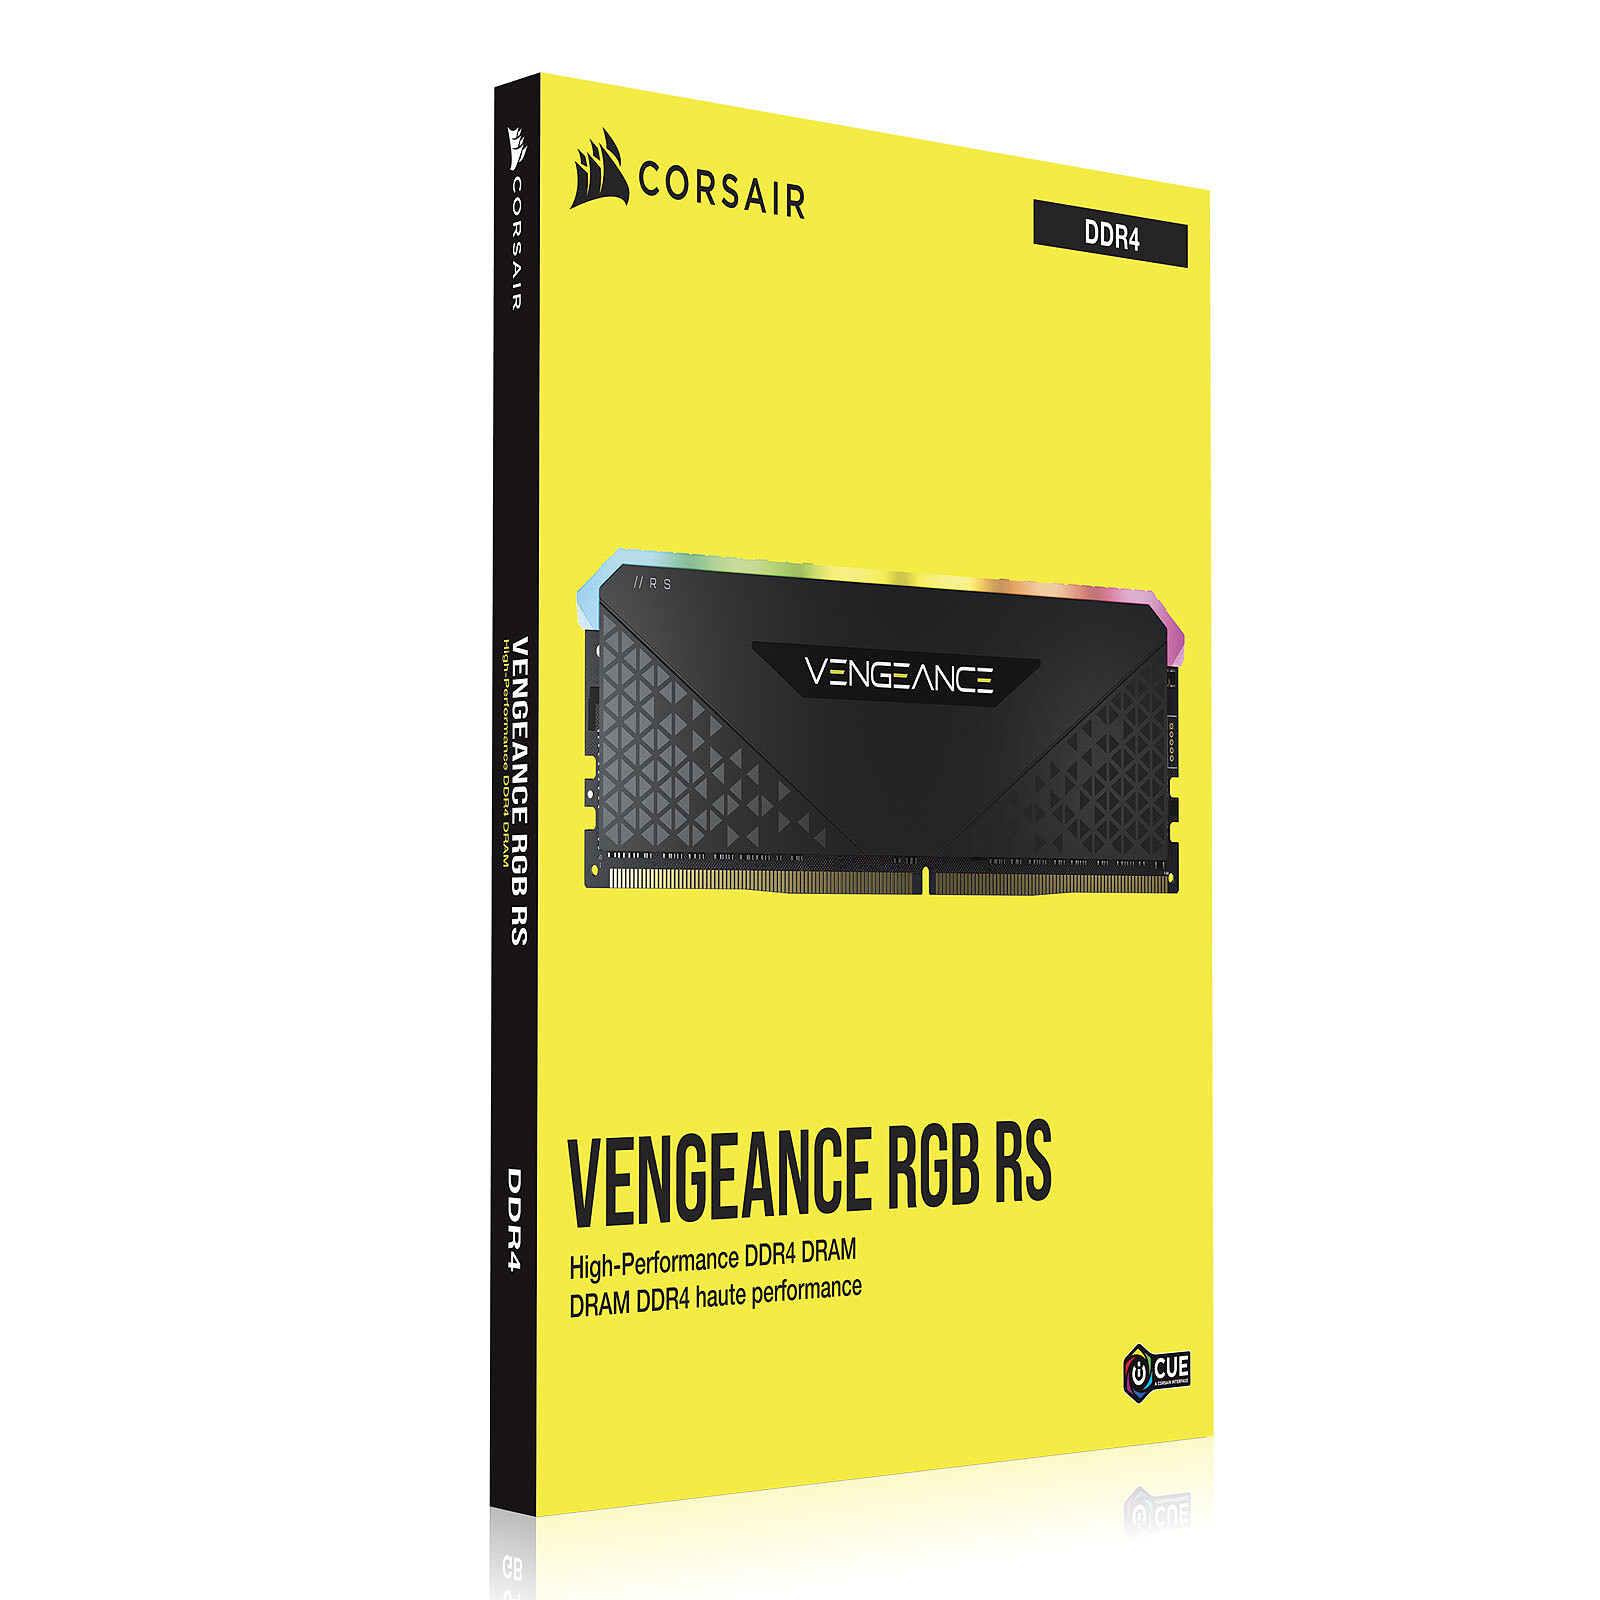 Corsair Vengeance RGB RS 16Go (1 x 16Go) DDR4 3200 MHz CL16 Mémoire